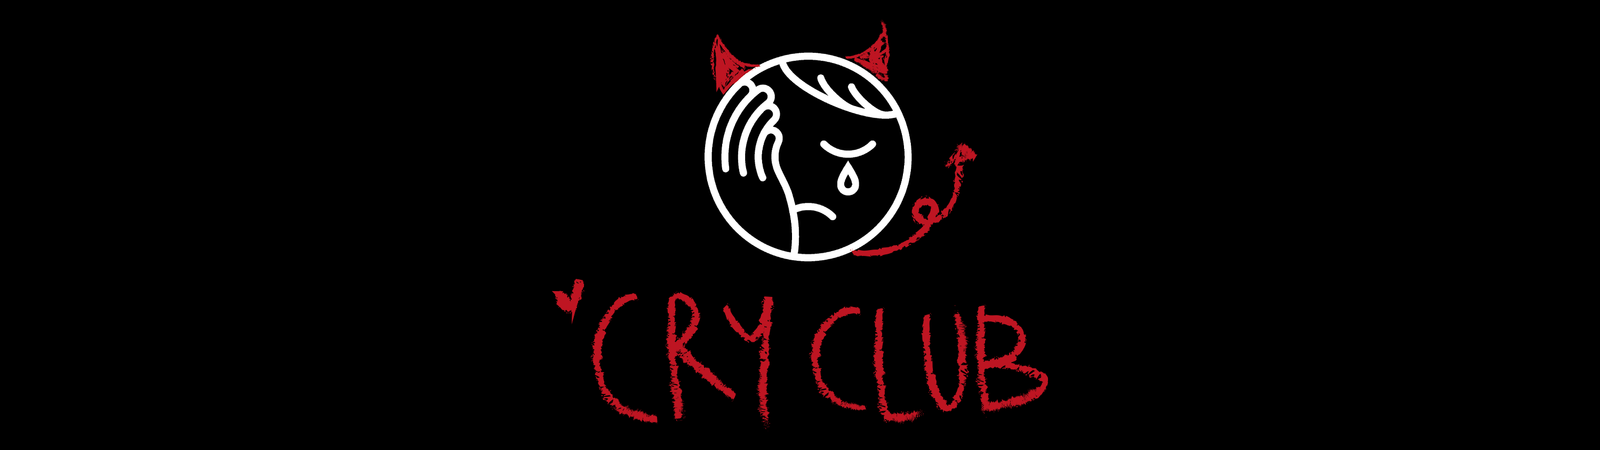 Cry Club